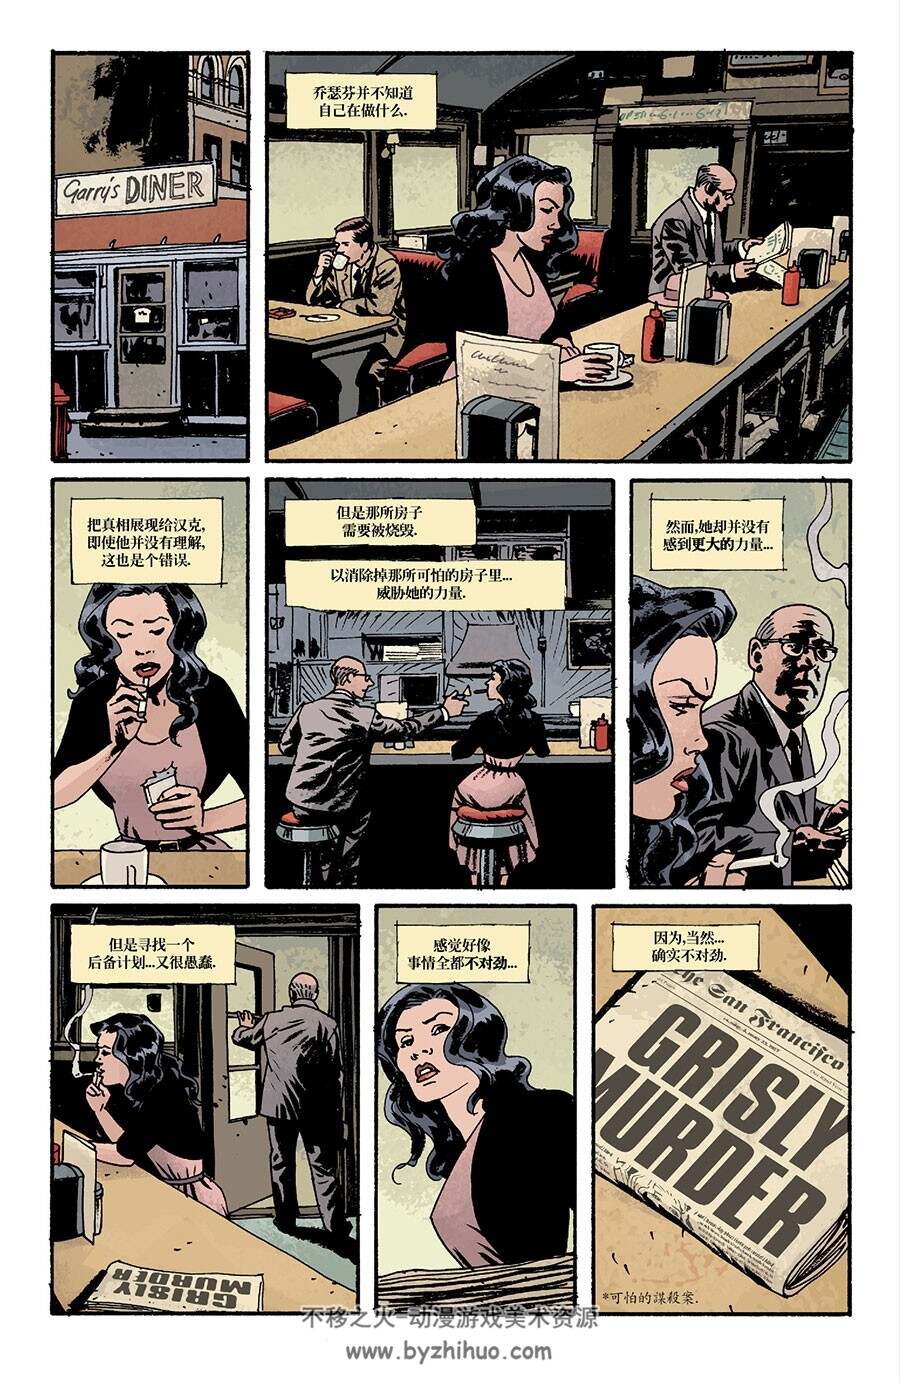 意乱情迷 5部24卷中文版 欧美漫画合集 百度网盘分享观看